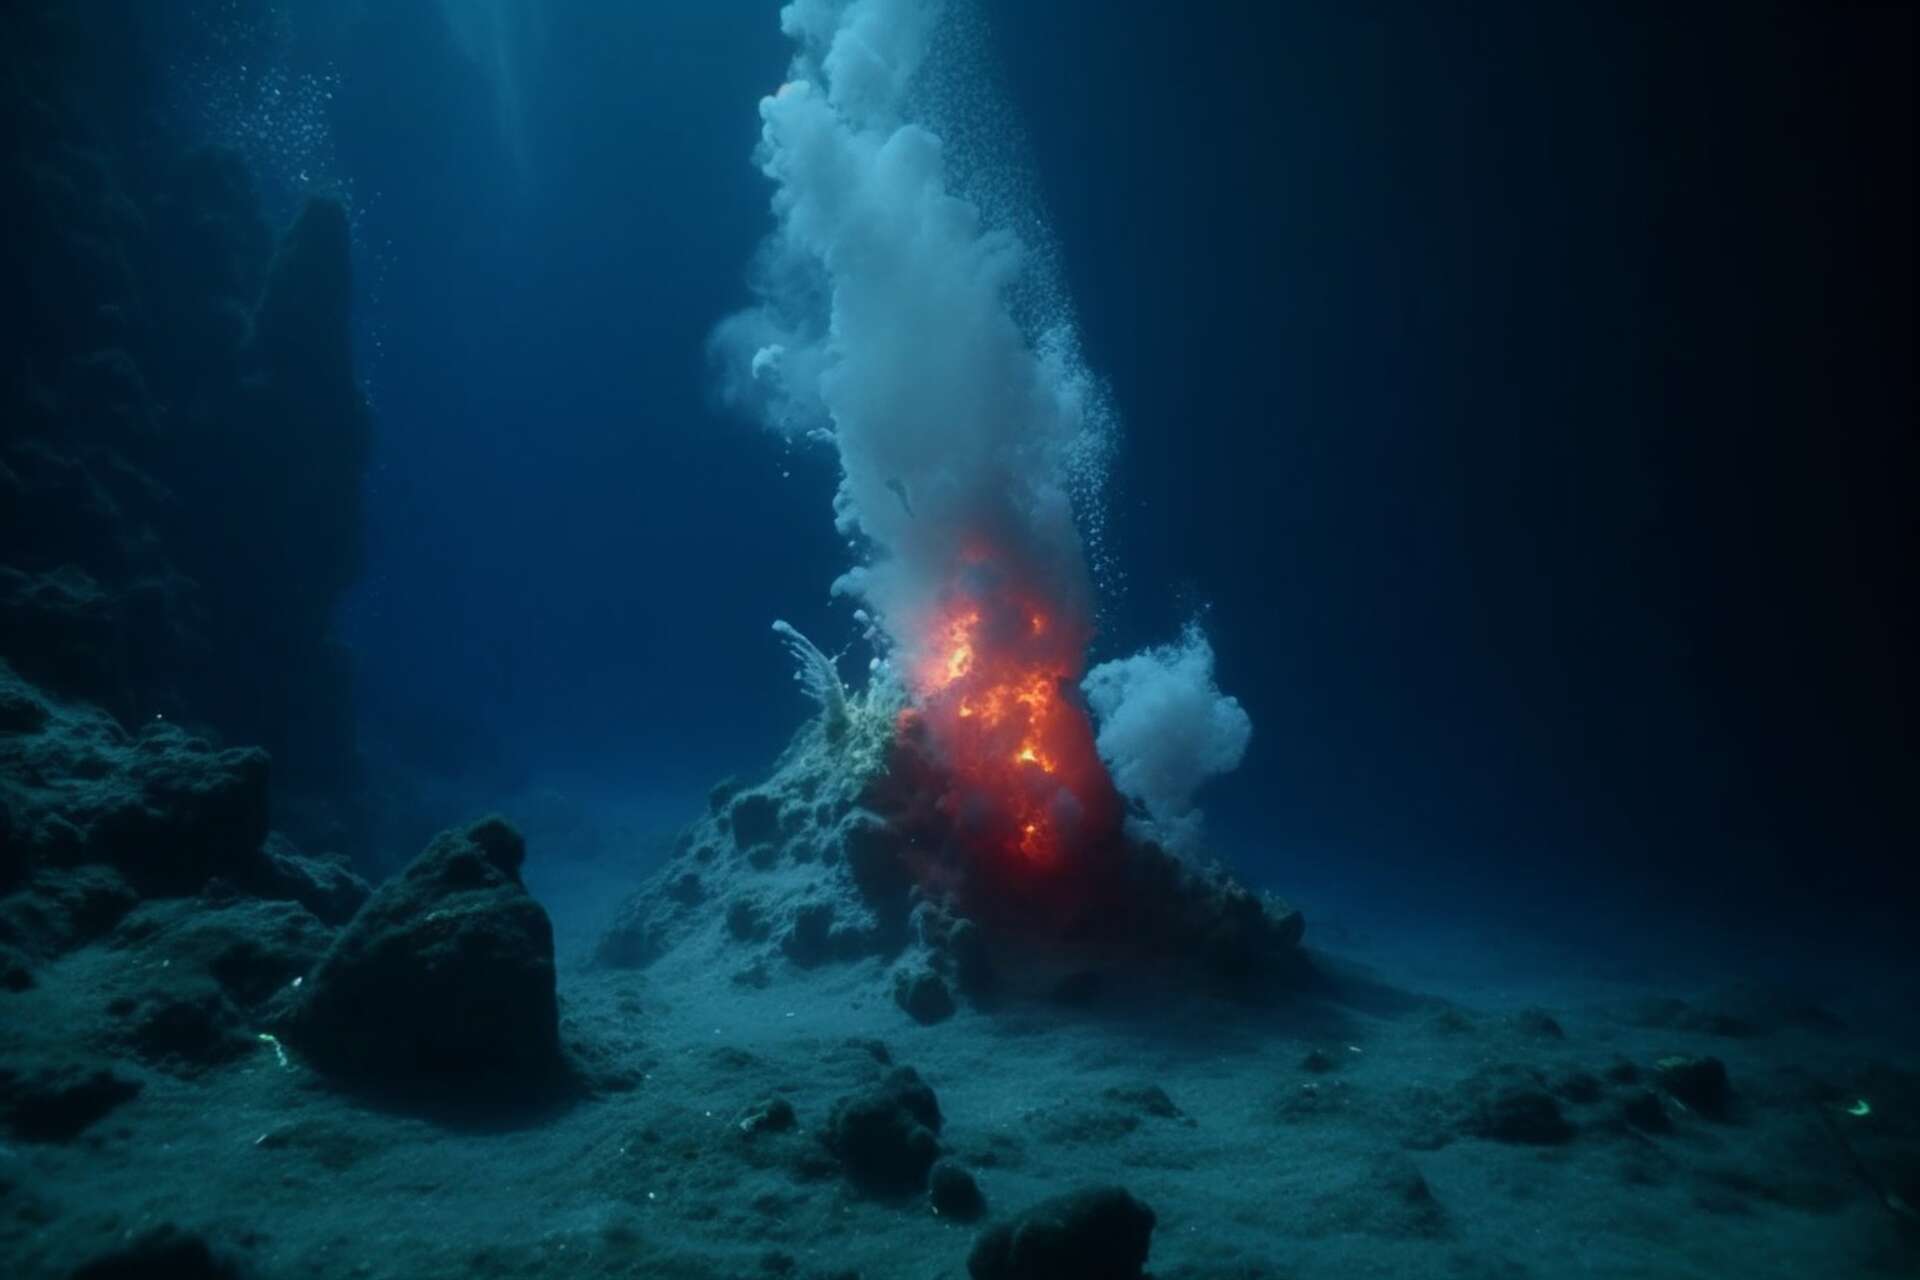 Ces petits volcans sous-marins pourraient cracher d’importantes quantités de méthane